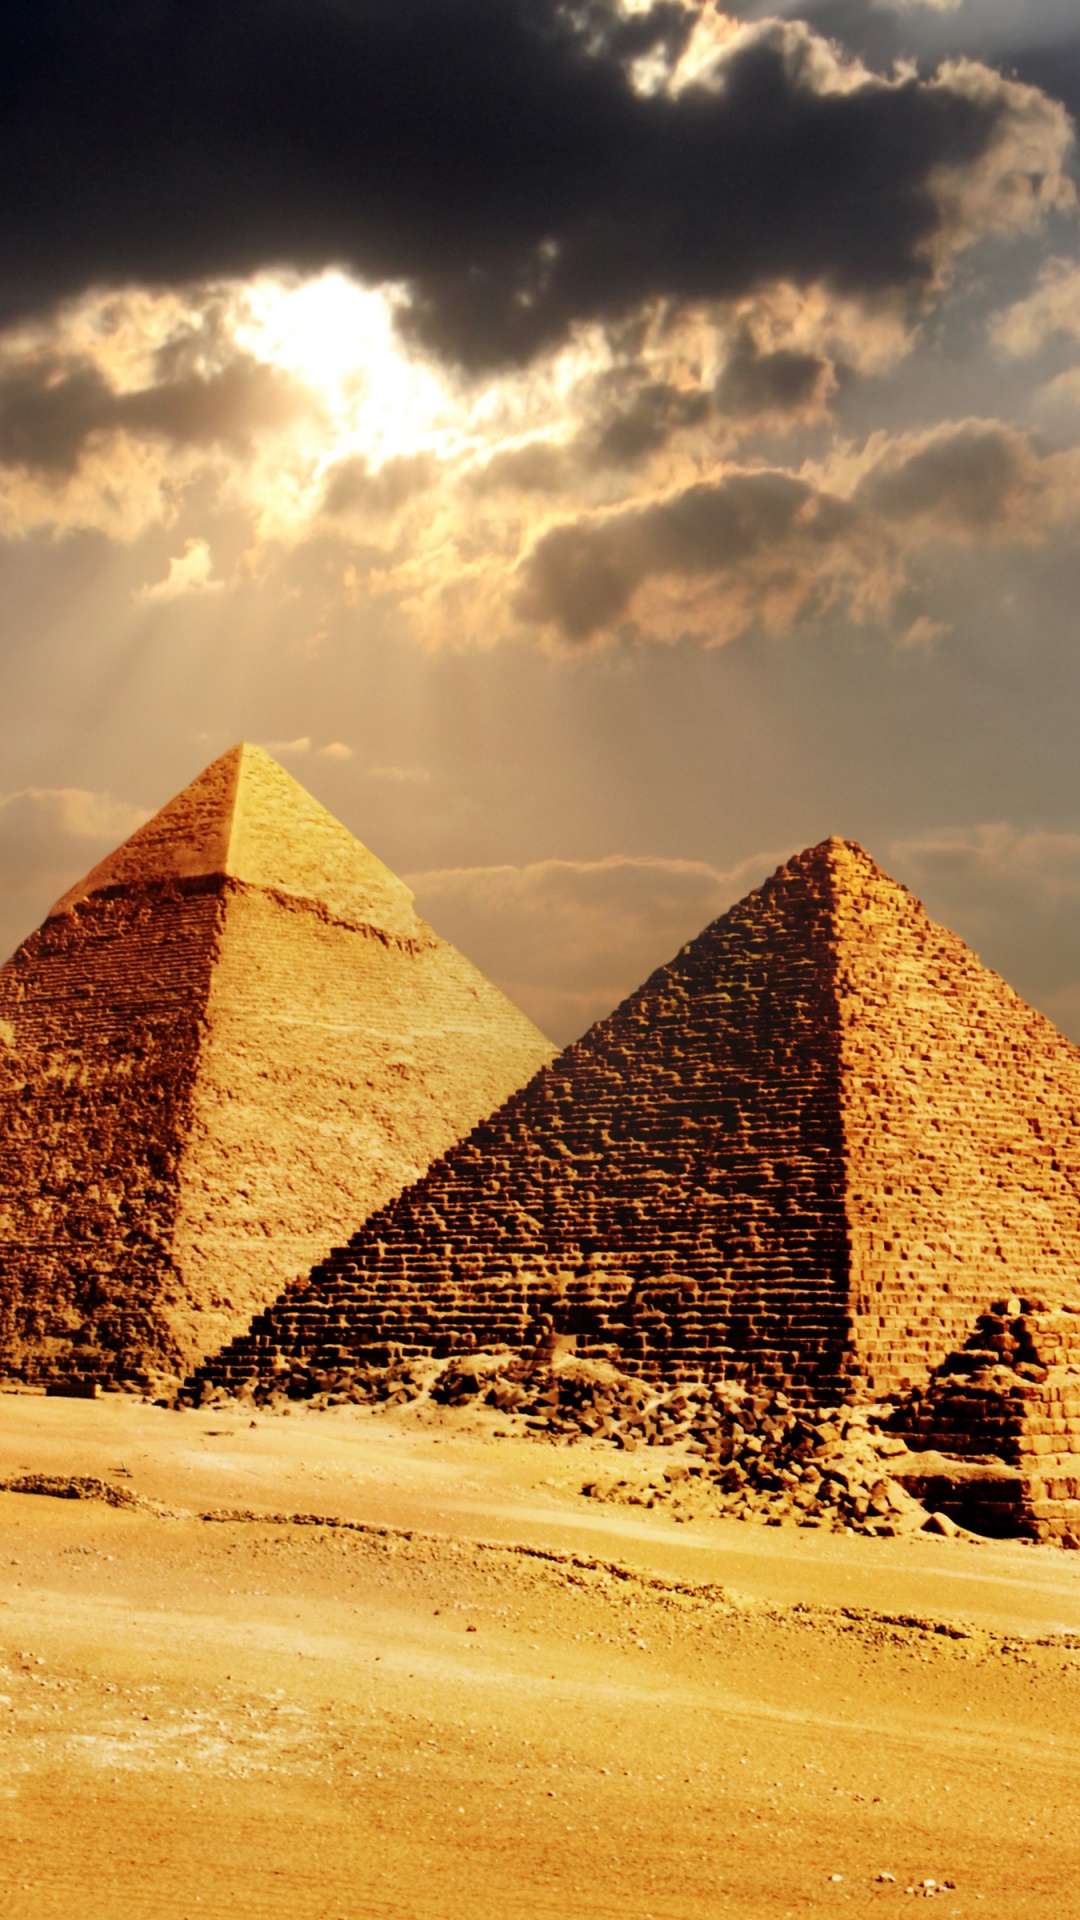 埃及金字塔, 金字塔, 纪念碑, 古代历史, 历史站 壁纸 1080x1920 允许